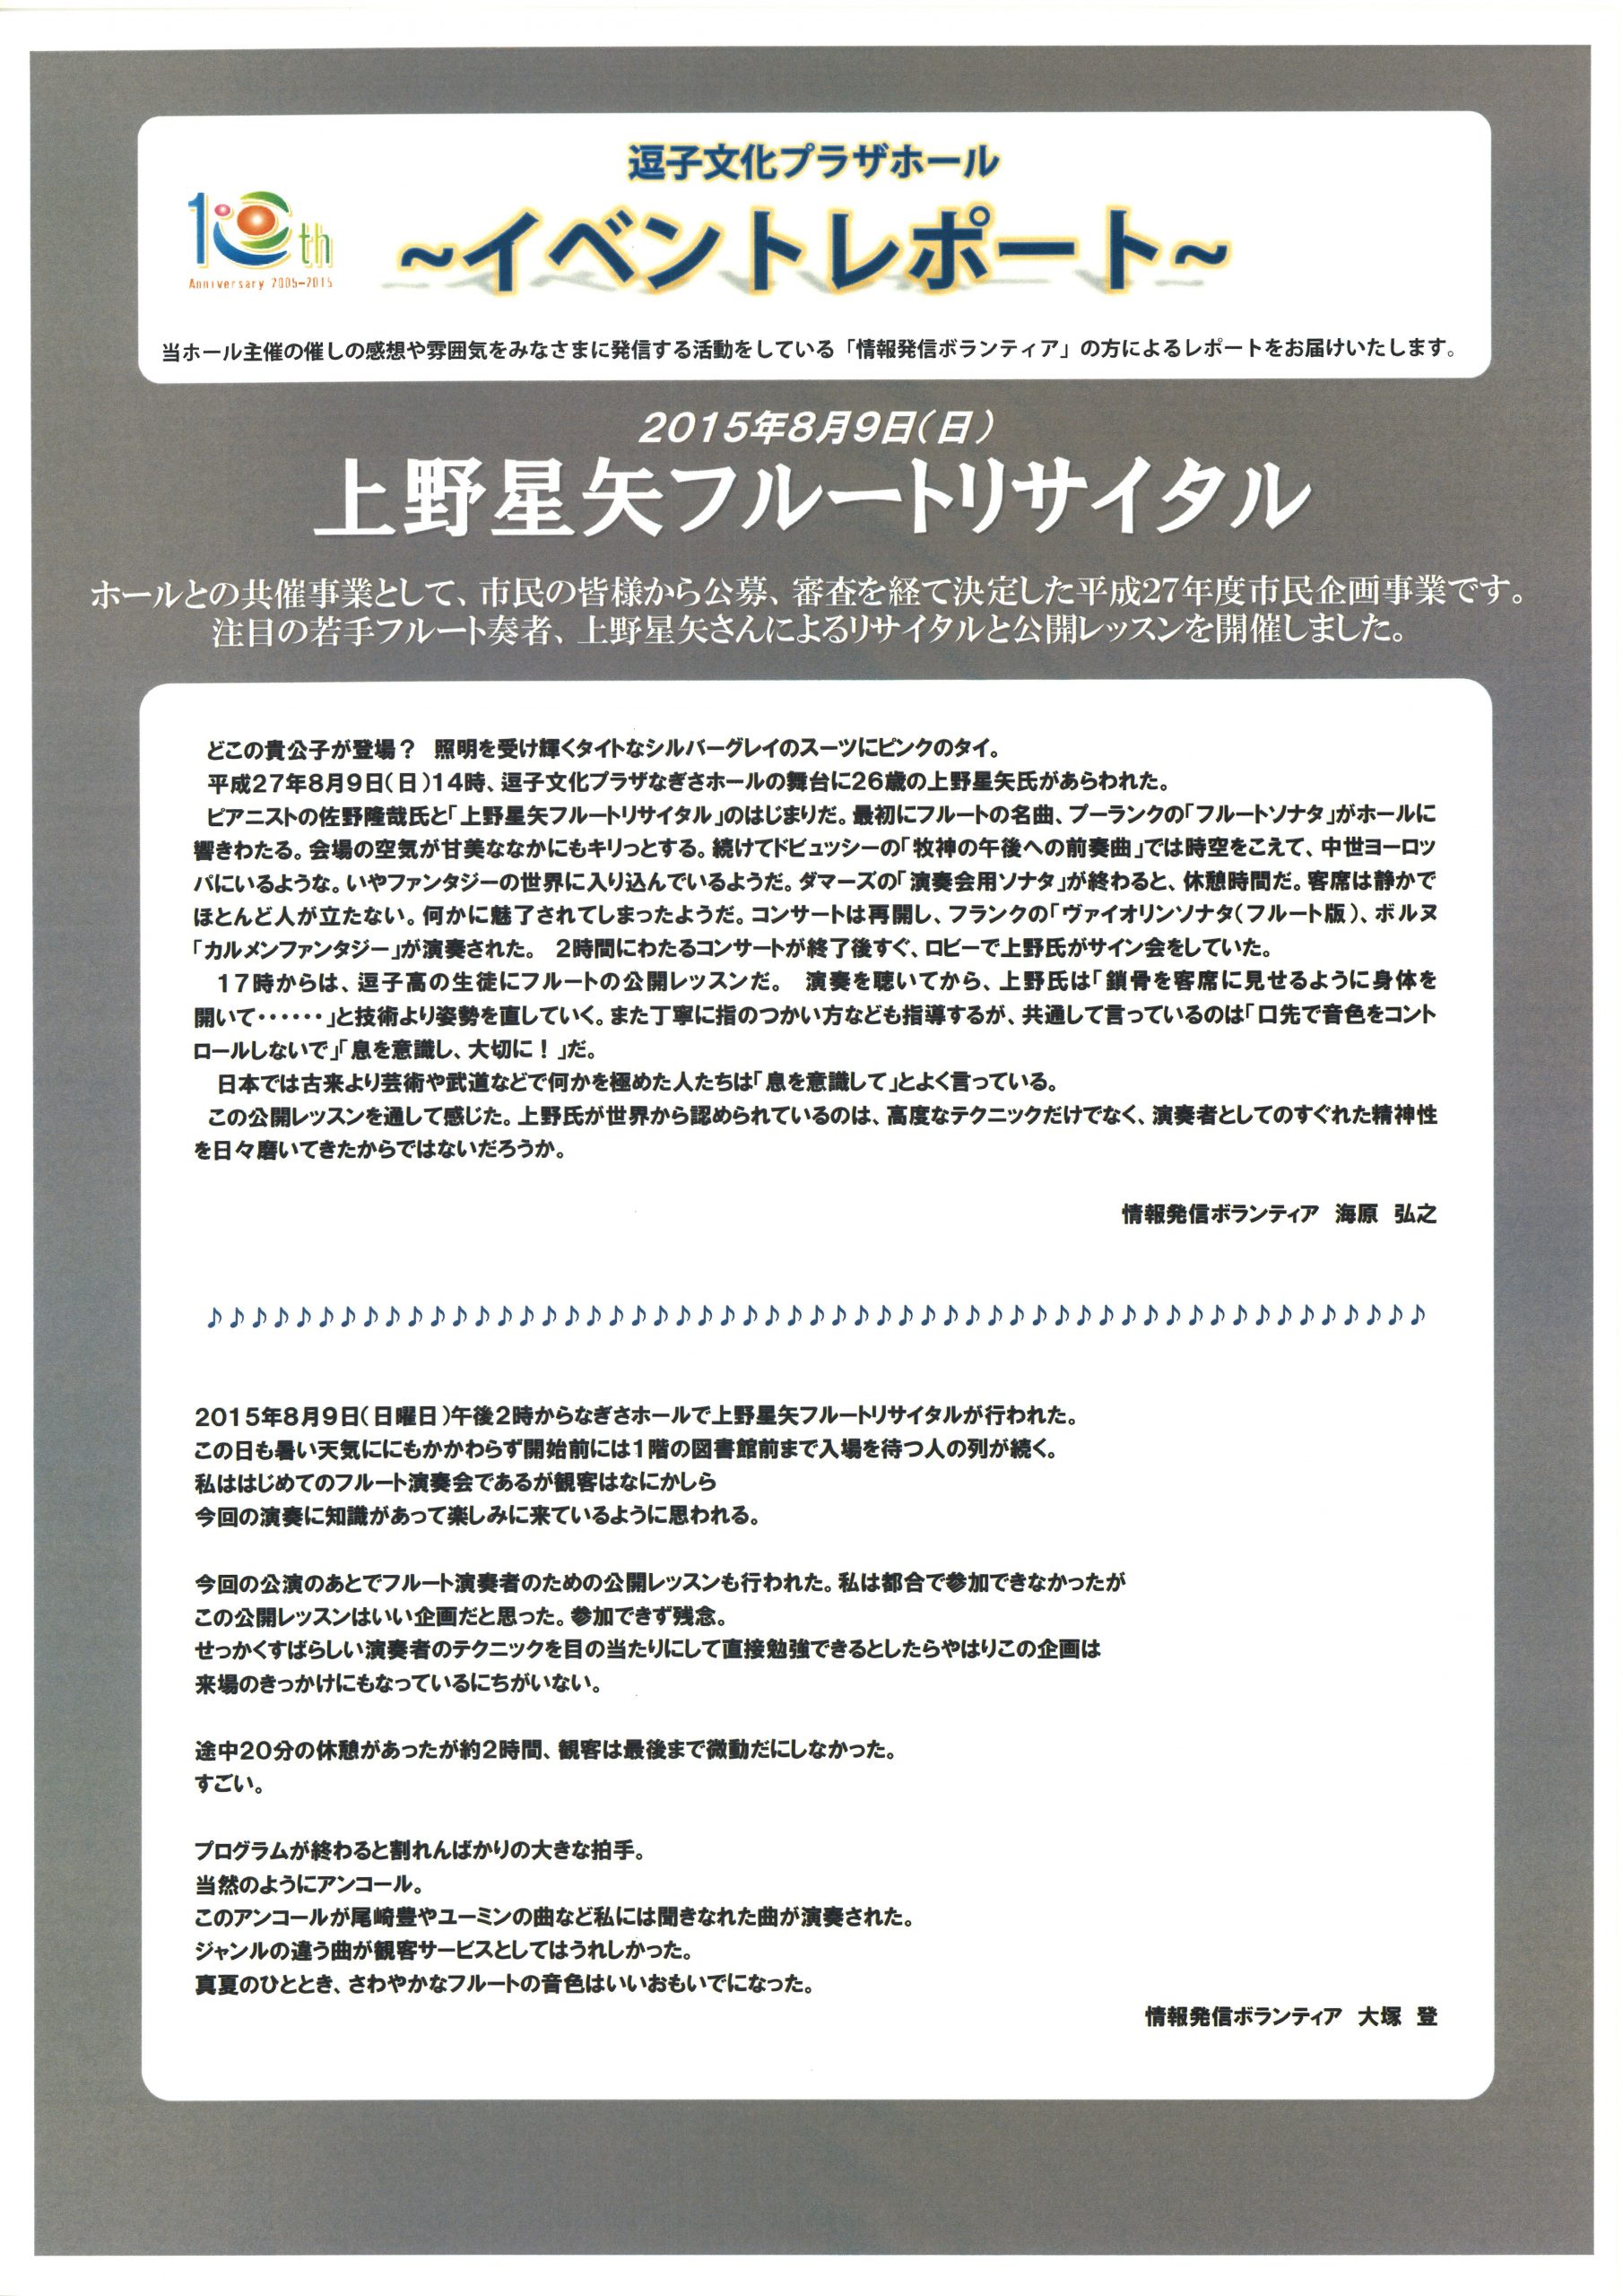 イベントレポート「上野星矢フルート・リサイタル」（市民企画事業）2015年8月9日開催